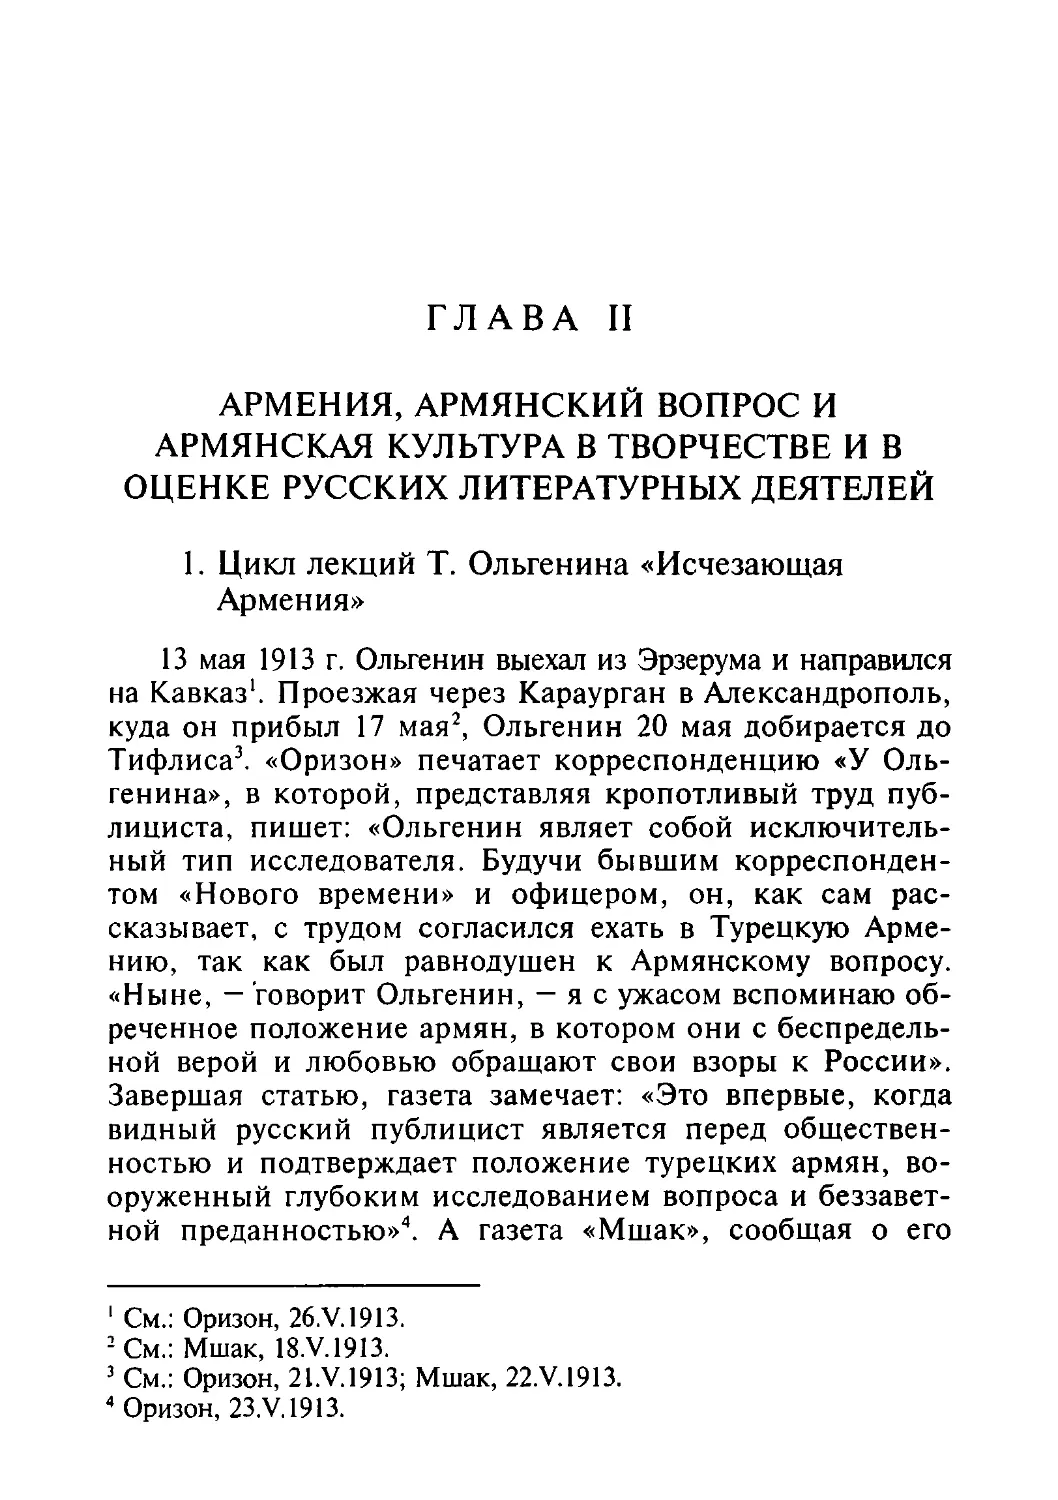 Глава II. Армения, армянский вопрос и армянская культура в творчестве и оценке русских литературных деятелей